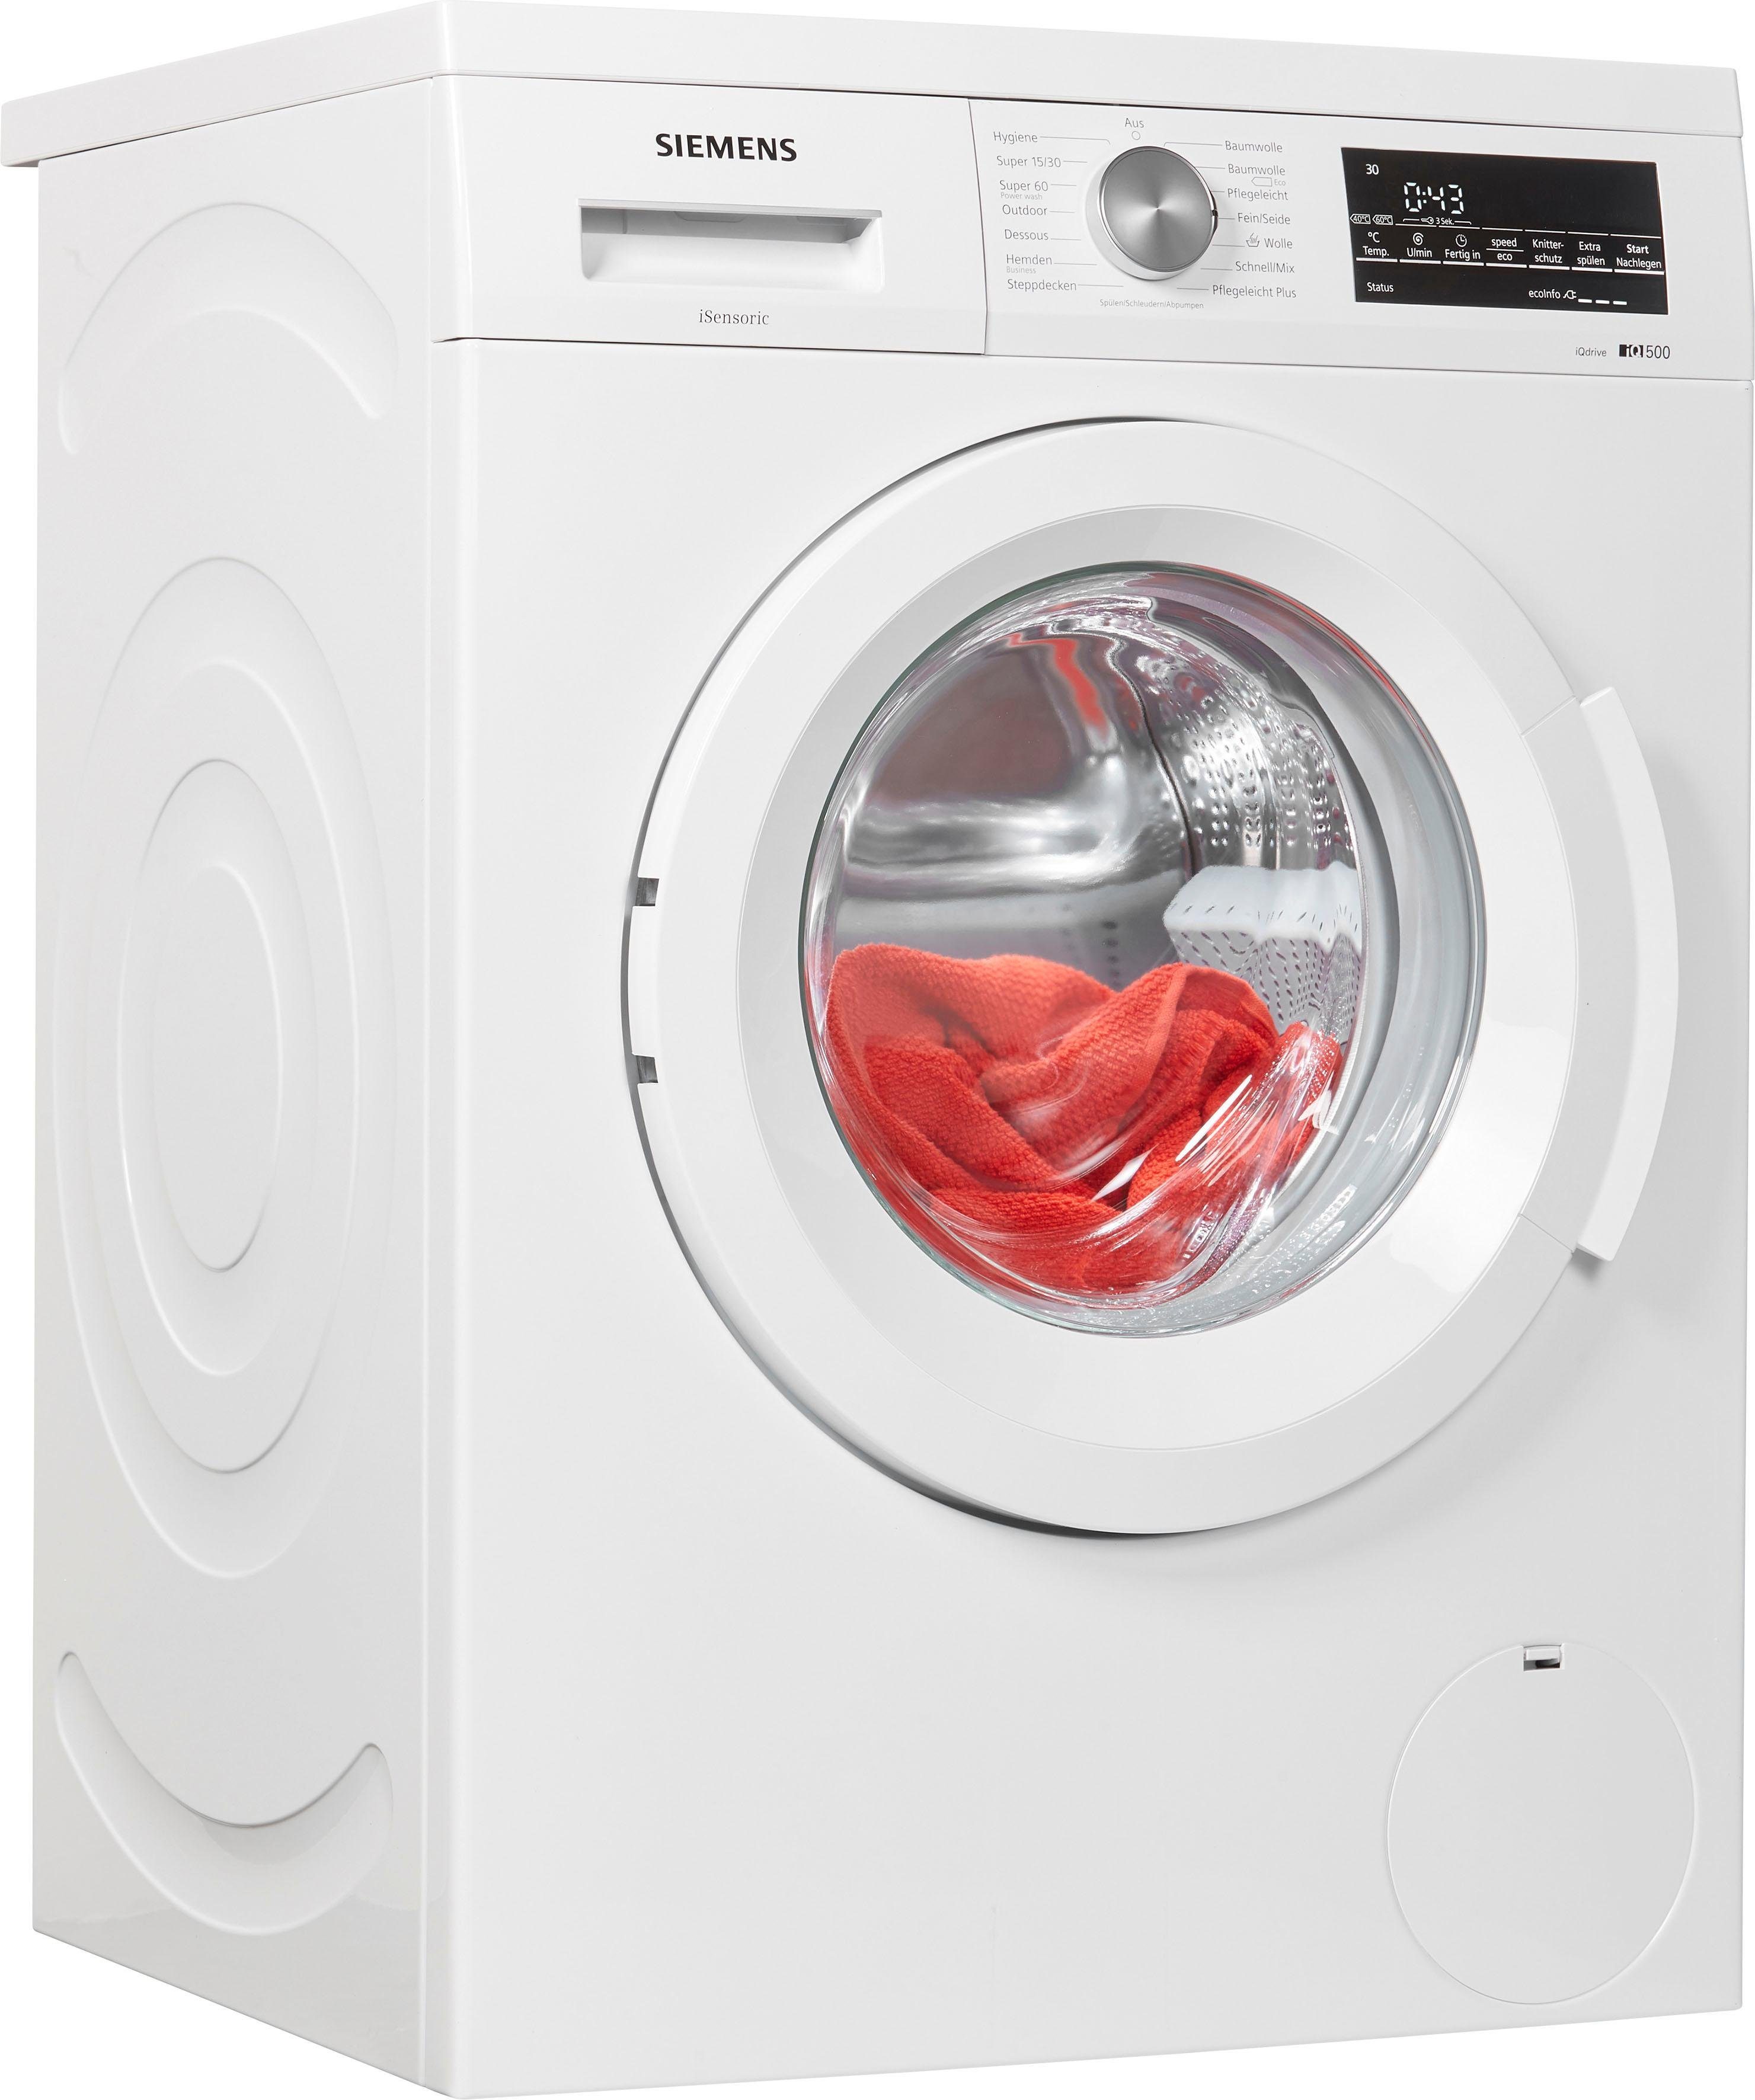 SIEMENS Waschmaschine iQ500 WU14Q440, 7 kg, 1400 U/min online kaufen | OTTO